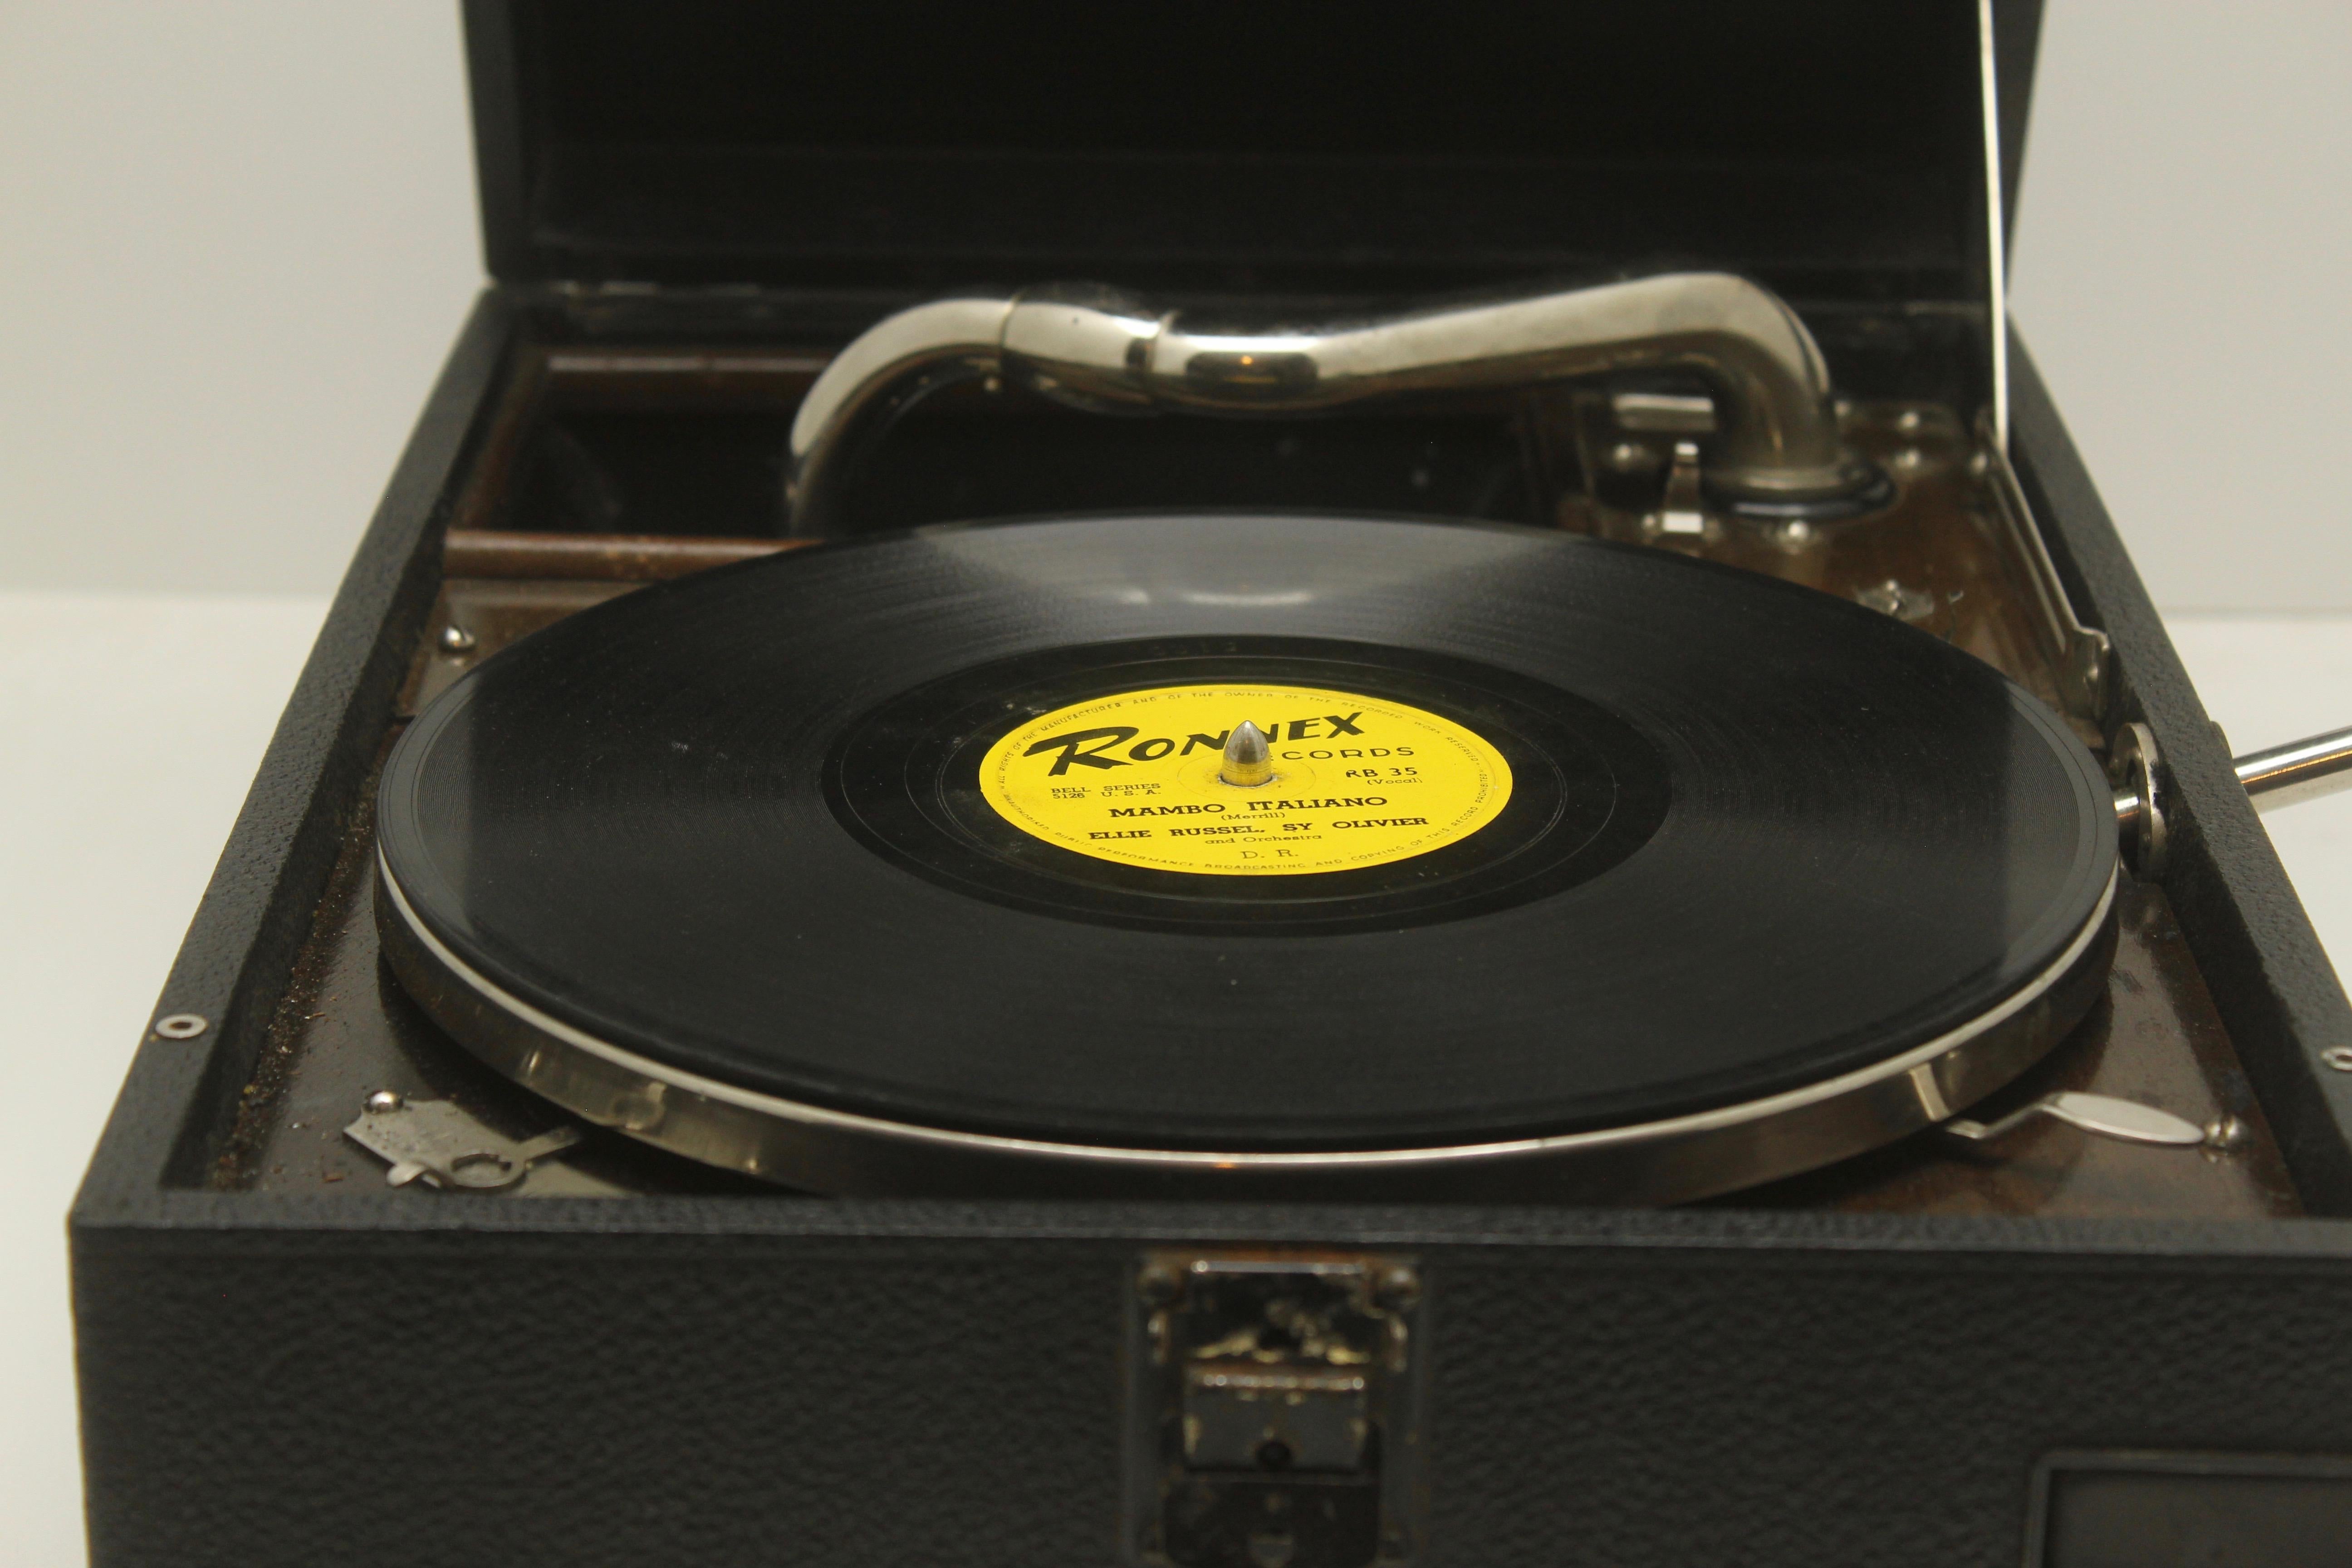 Machine-Made Suitcase Gramophone “La Voix de son Maître” 'His Master’s Voice' Model HMV 101